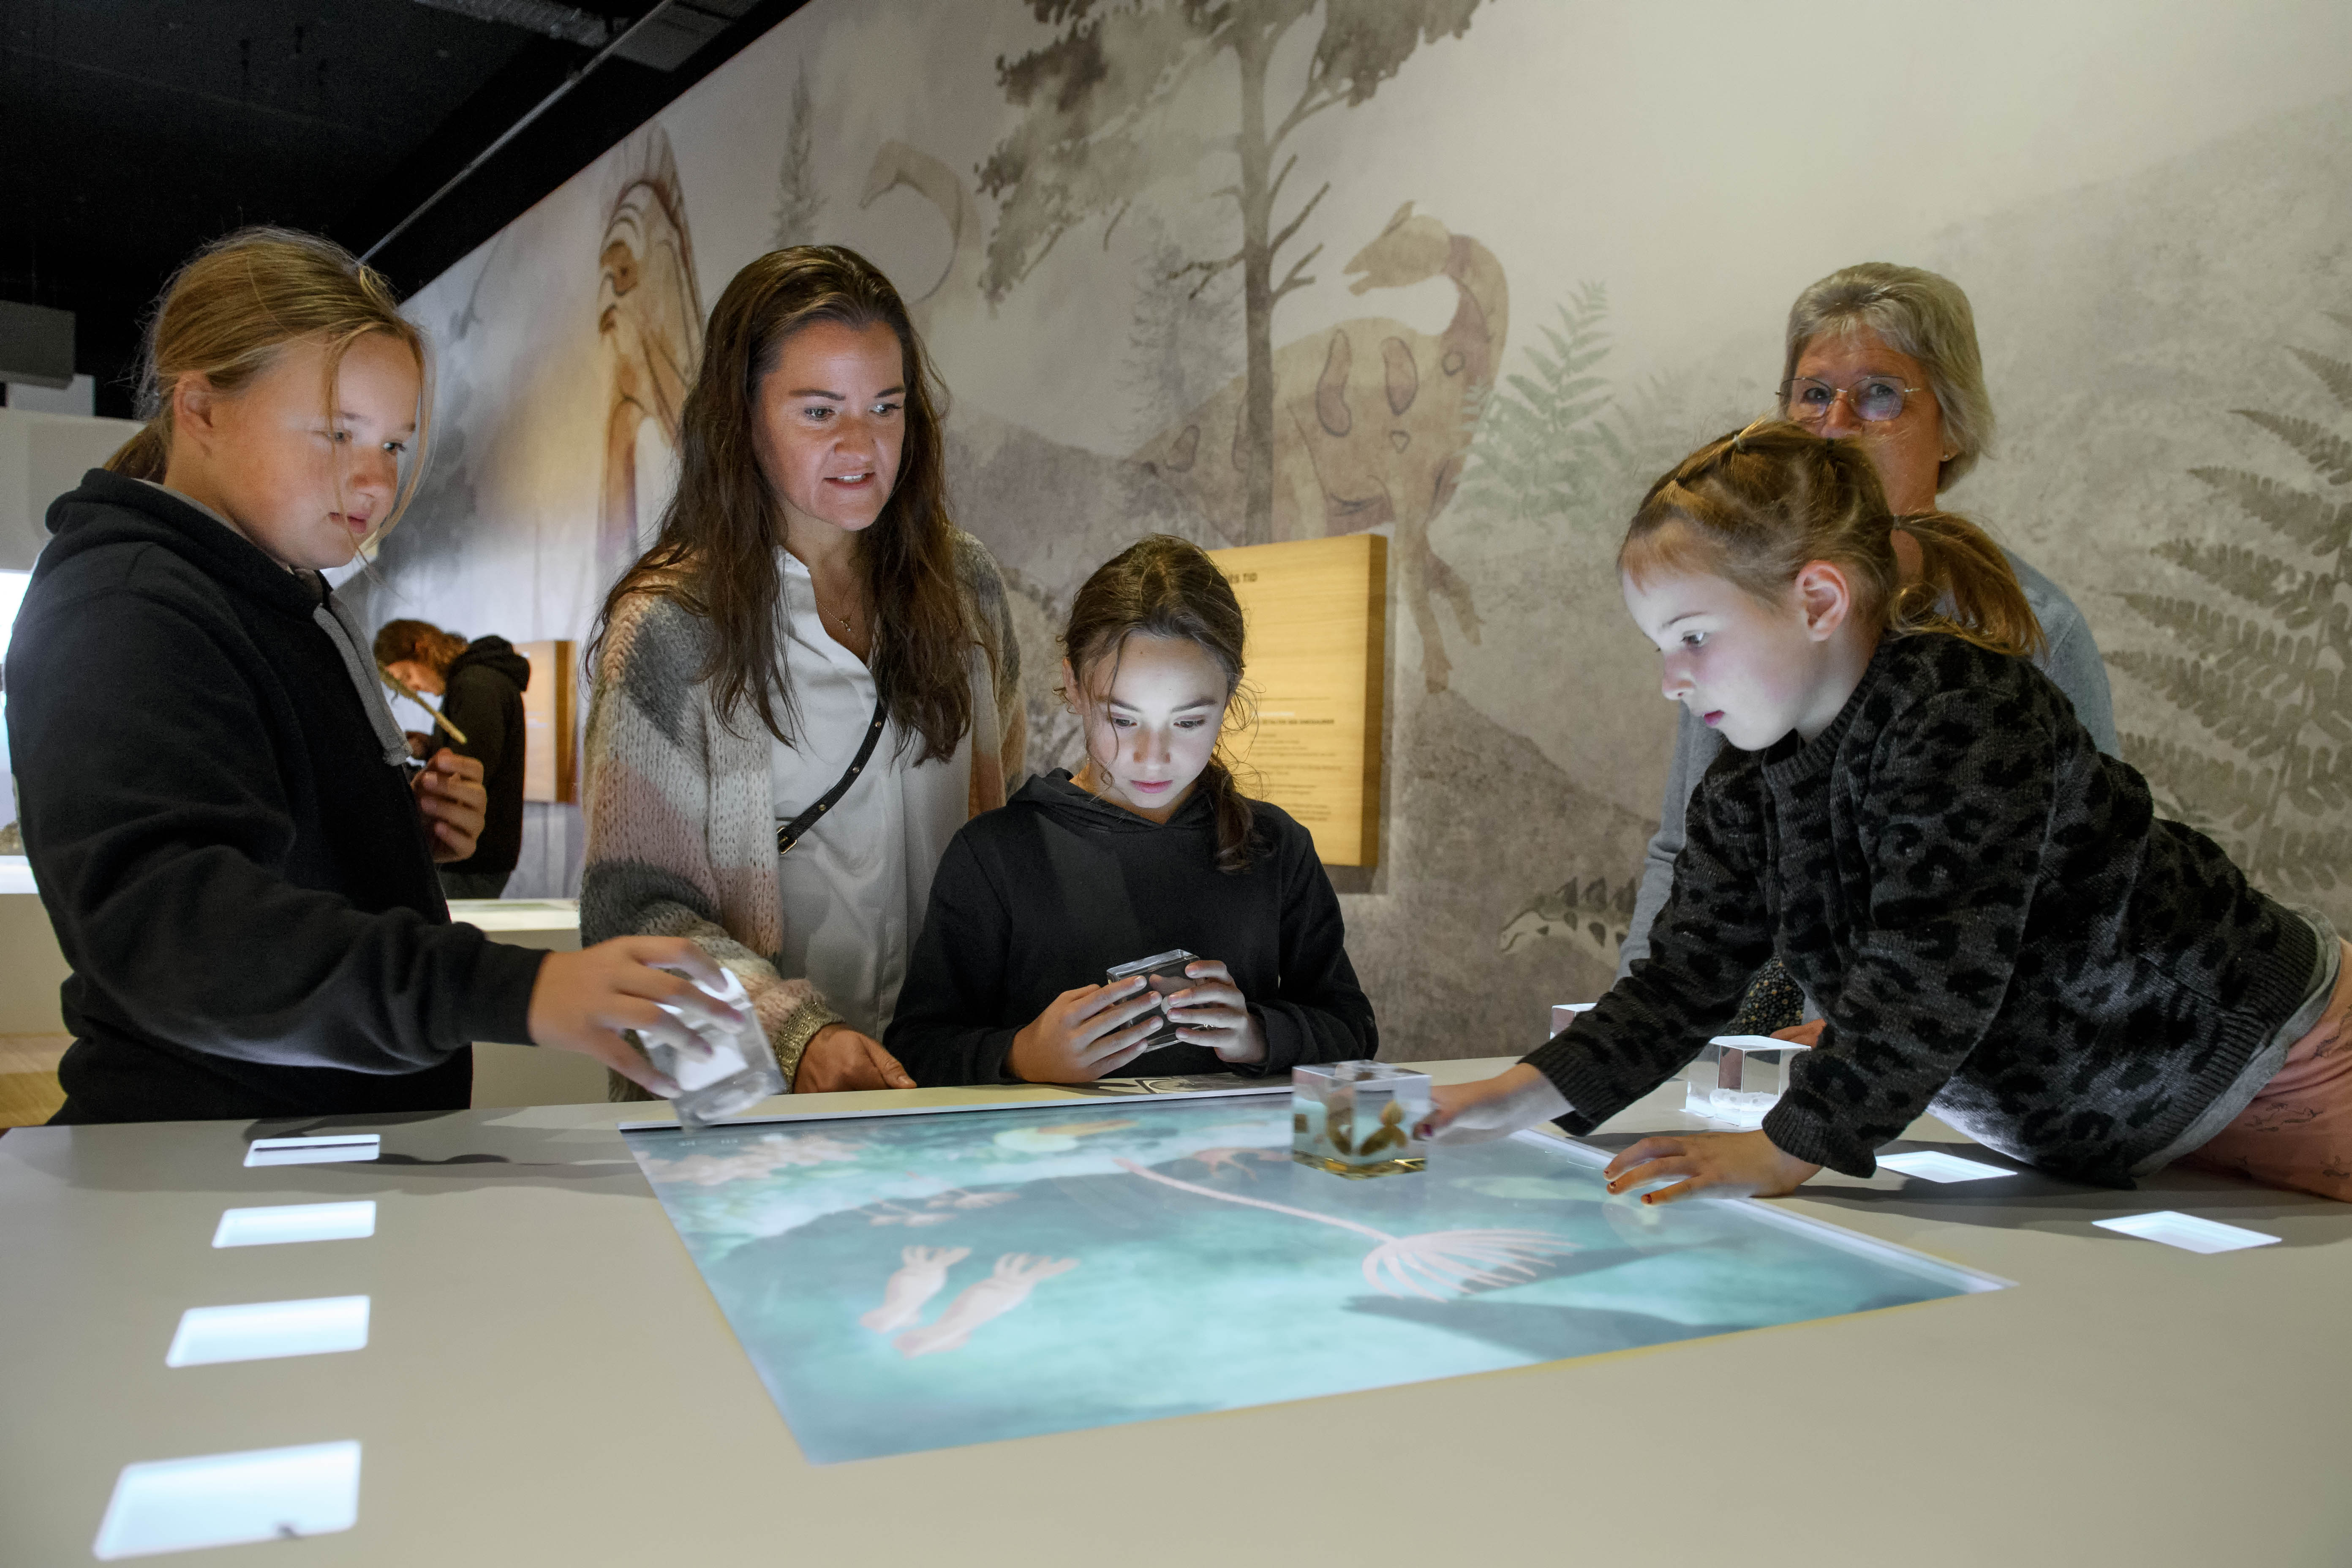 Besucher probieren die interaktive Installation im Stevns Klint Experience in Dänemark aus